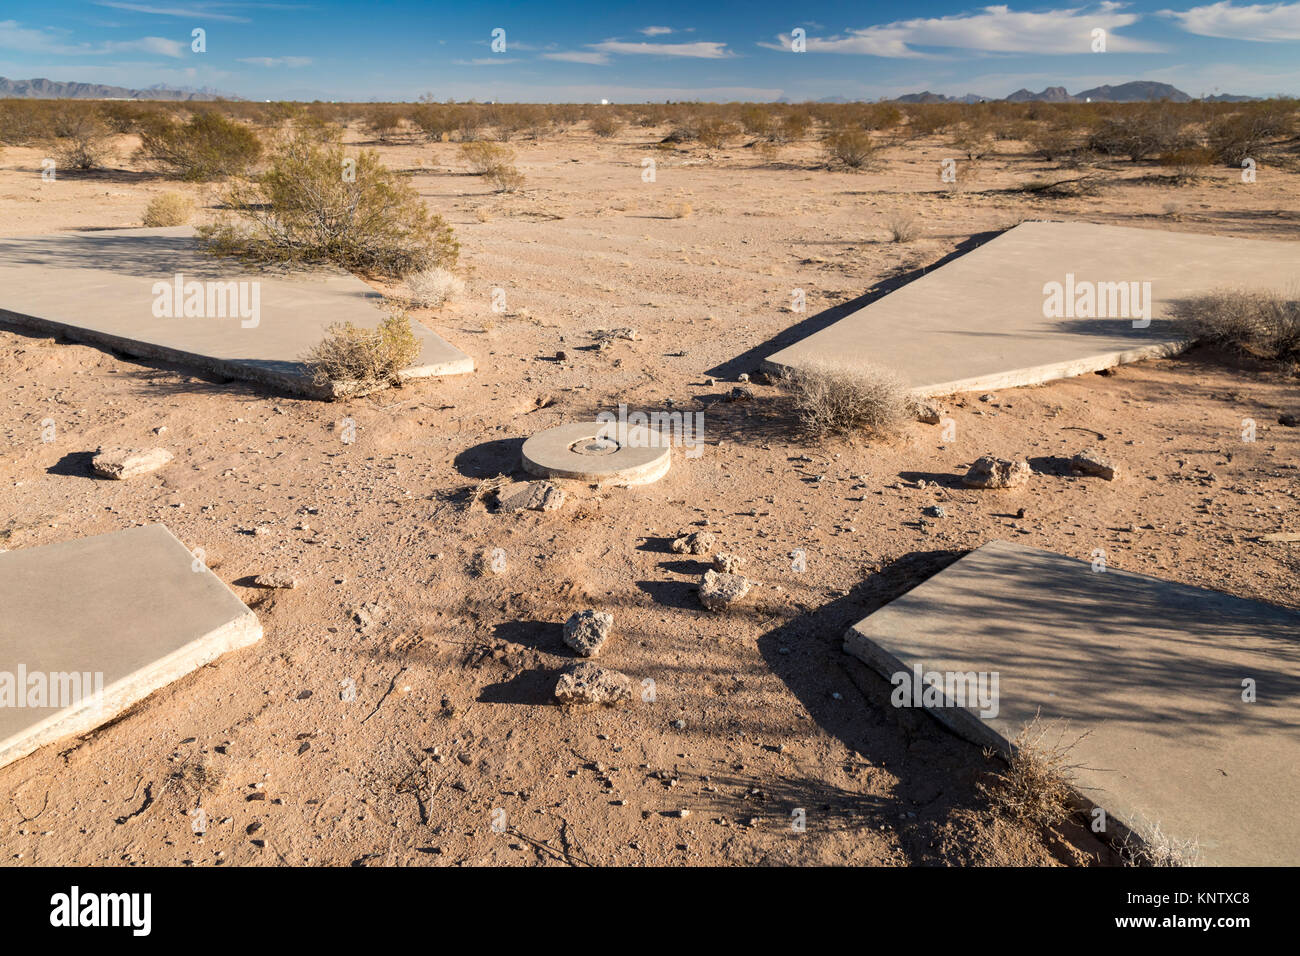 Casa Grande, Arizona - Eine von 256 Satelliten-Kalibrierung Marker in der Wüste von Arizona von der US Air Force und der Central Intelligence Agency platziert Stockfoto